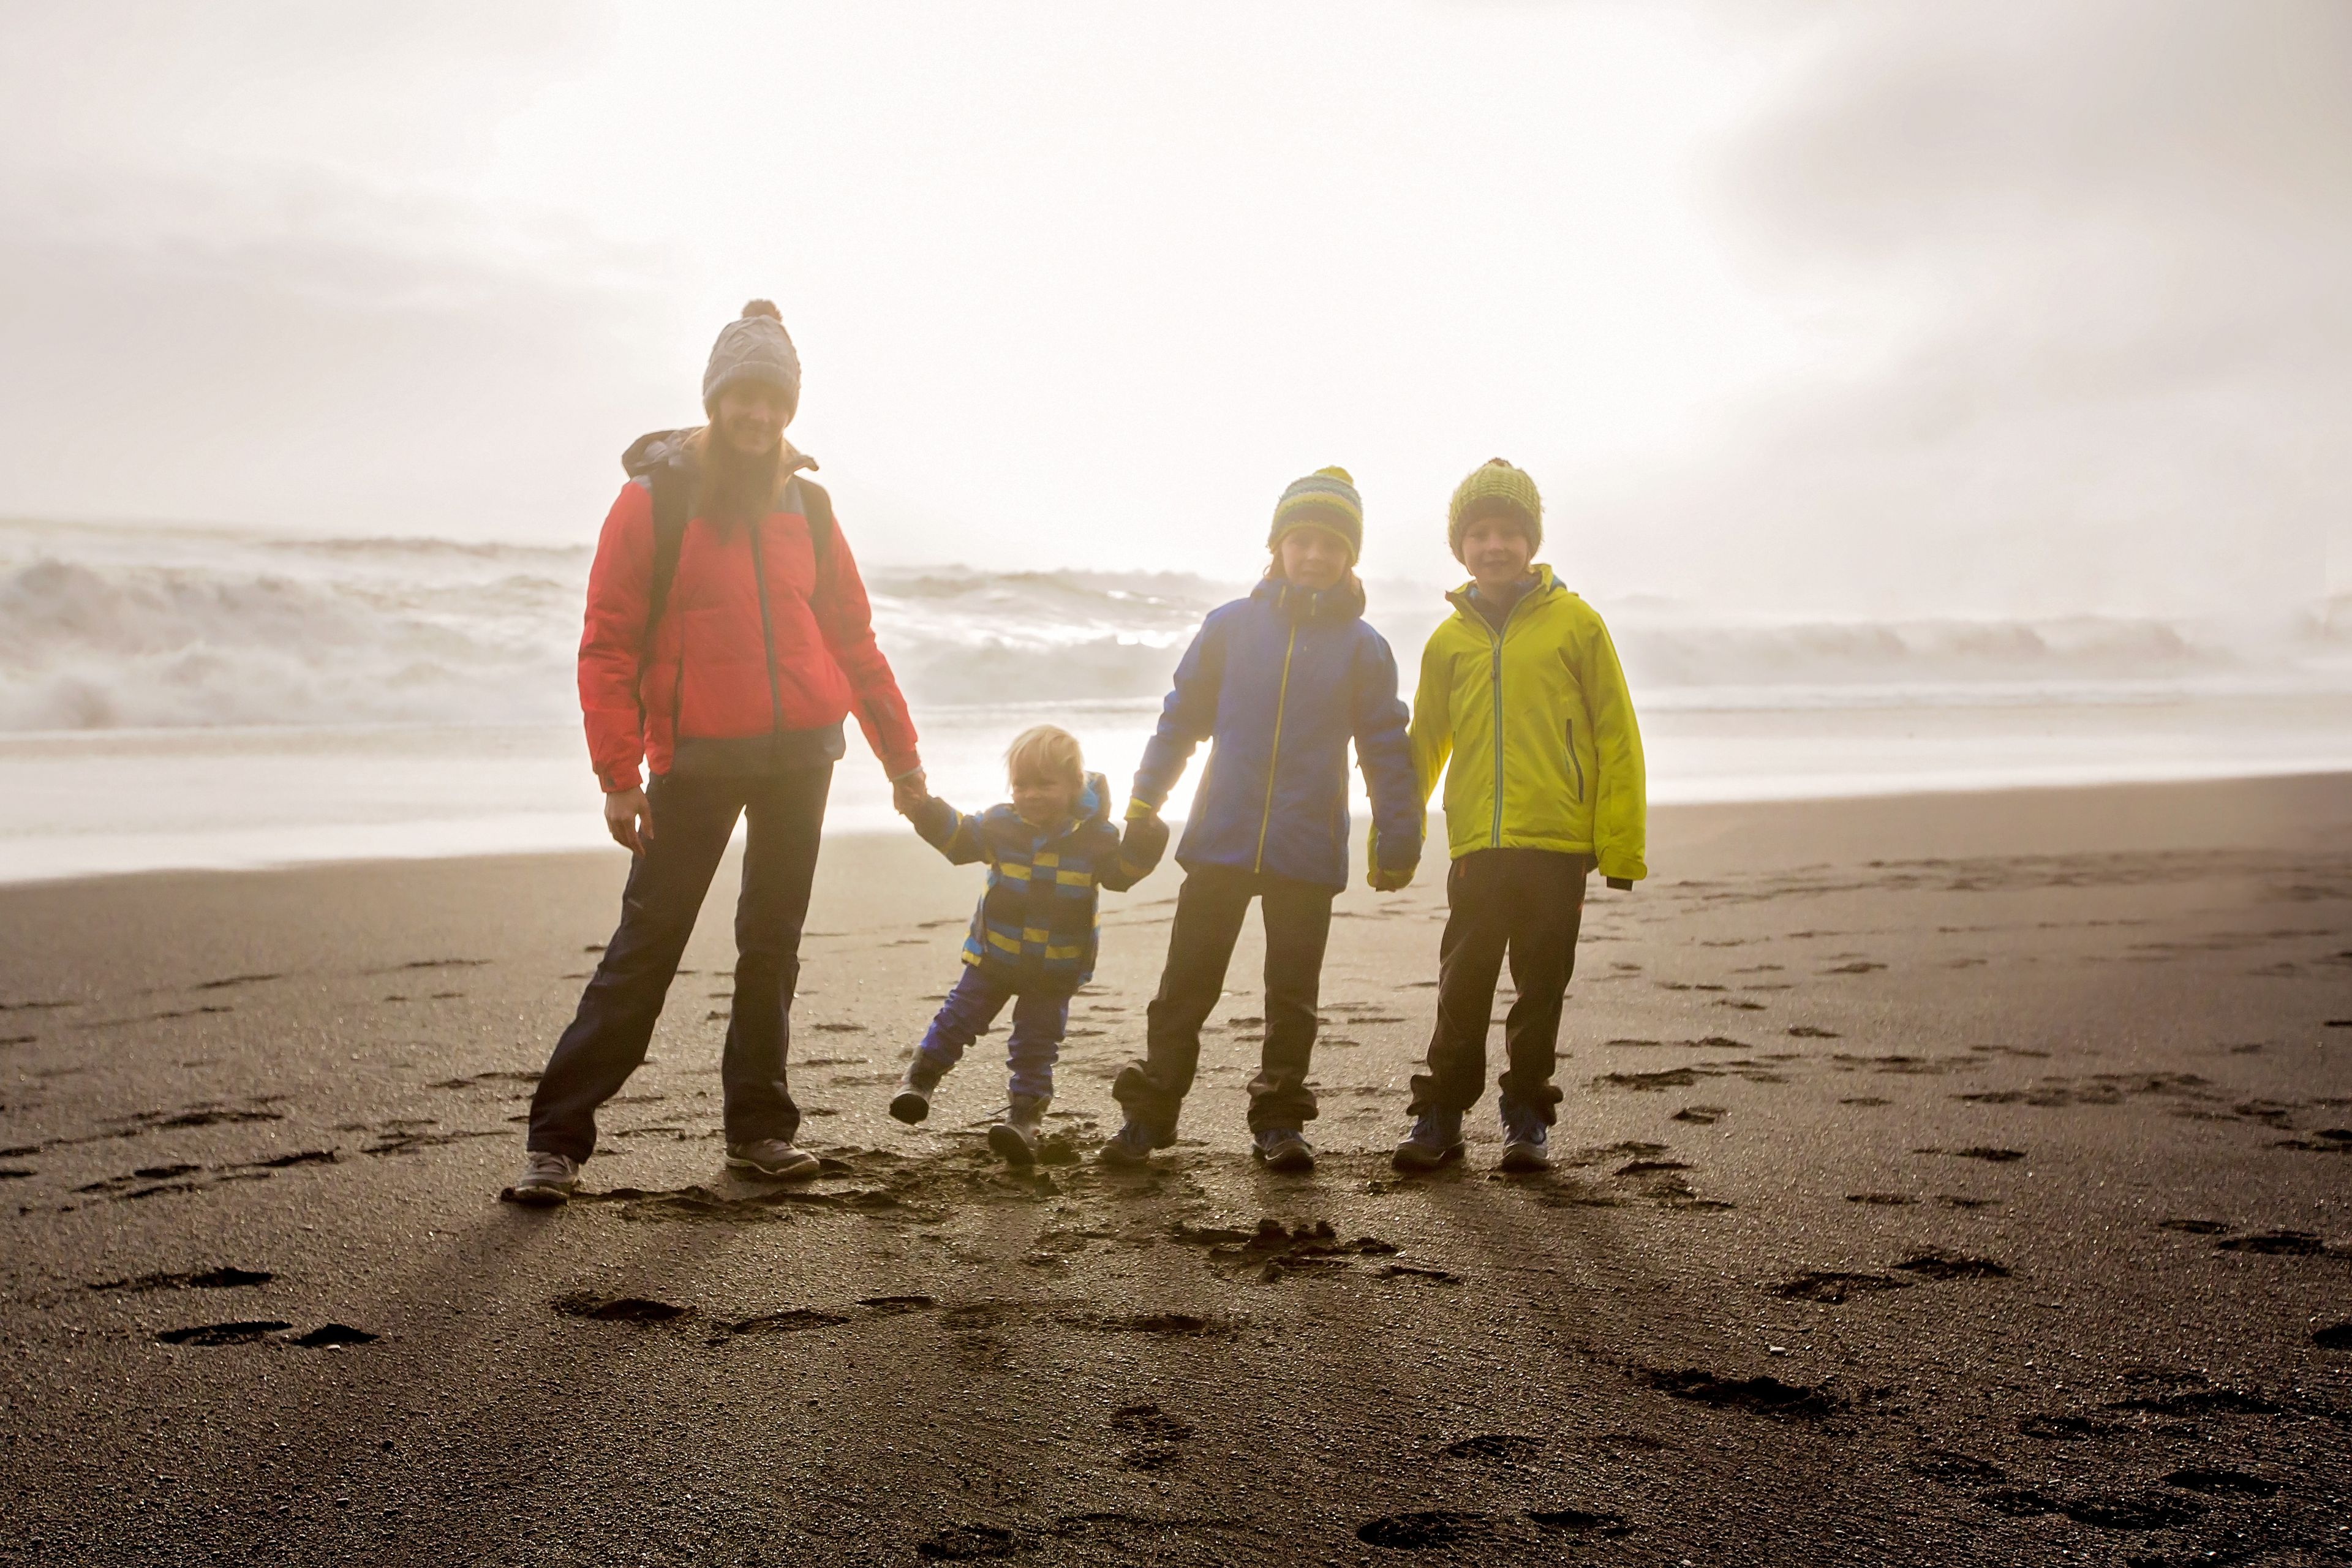 Madre y sus tres hijos en la playa de arena negra Reynisfjara, Islandia